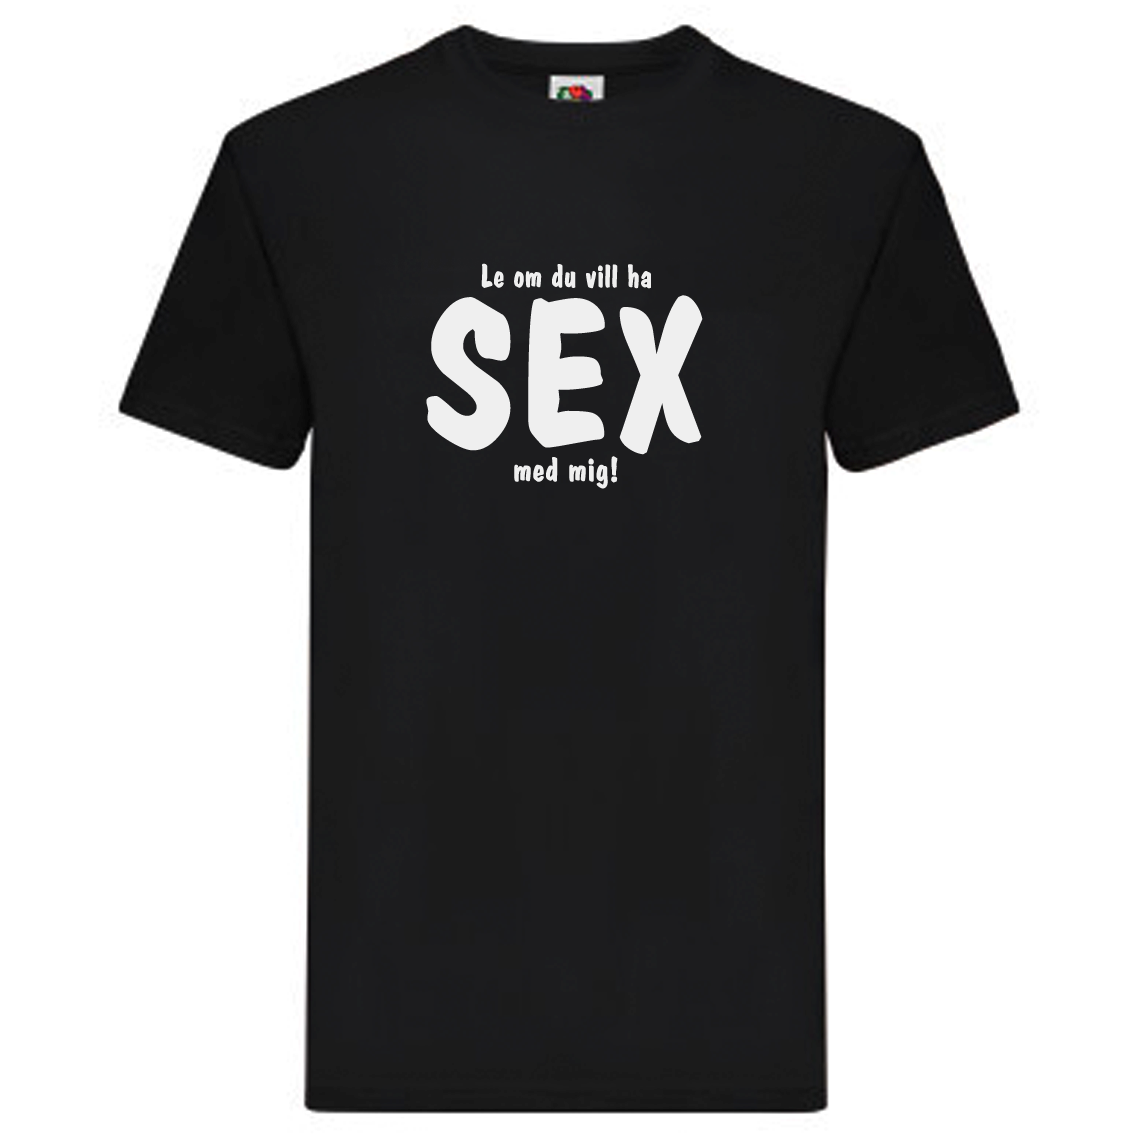 T-Shirt - Le om du vill ha sex med mig!